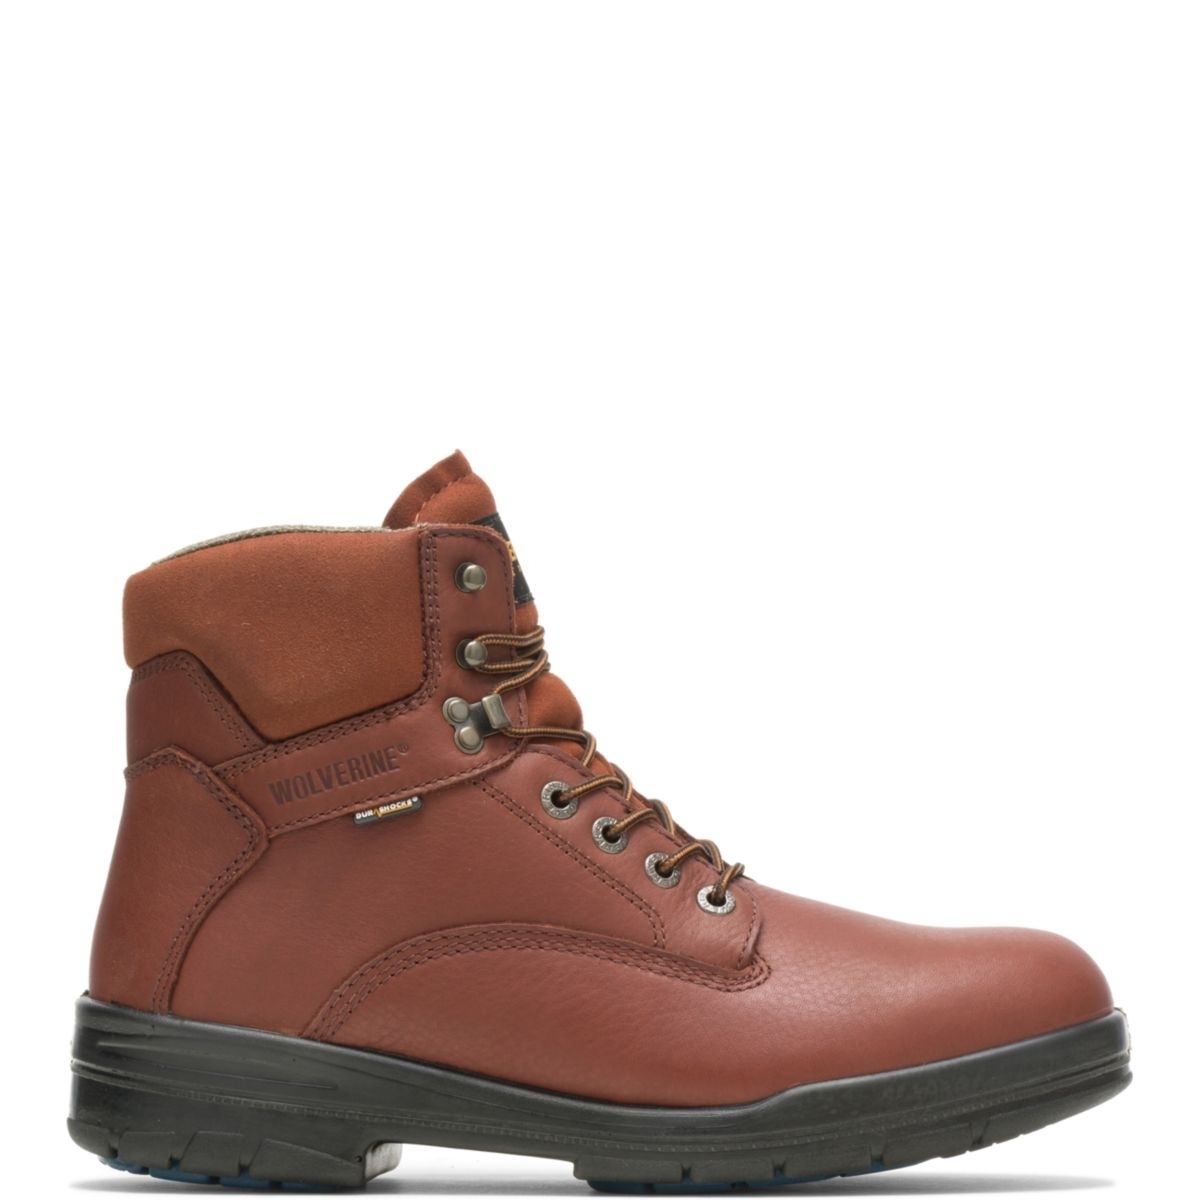 WOLVERINE Men's 6 DuraShocksÂ® Steel Toe Direct-Attach Work Boot Brown - W03120 BROWN - BROWN, 12